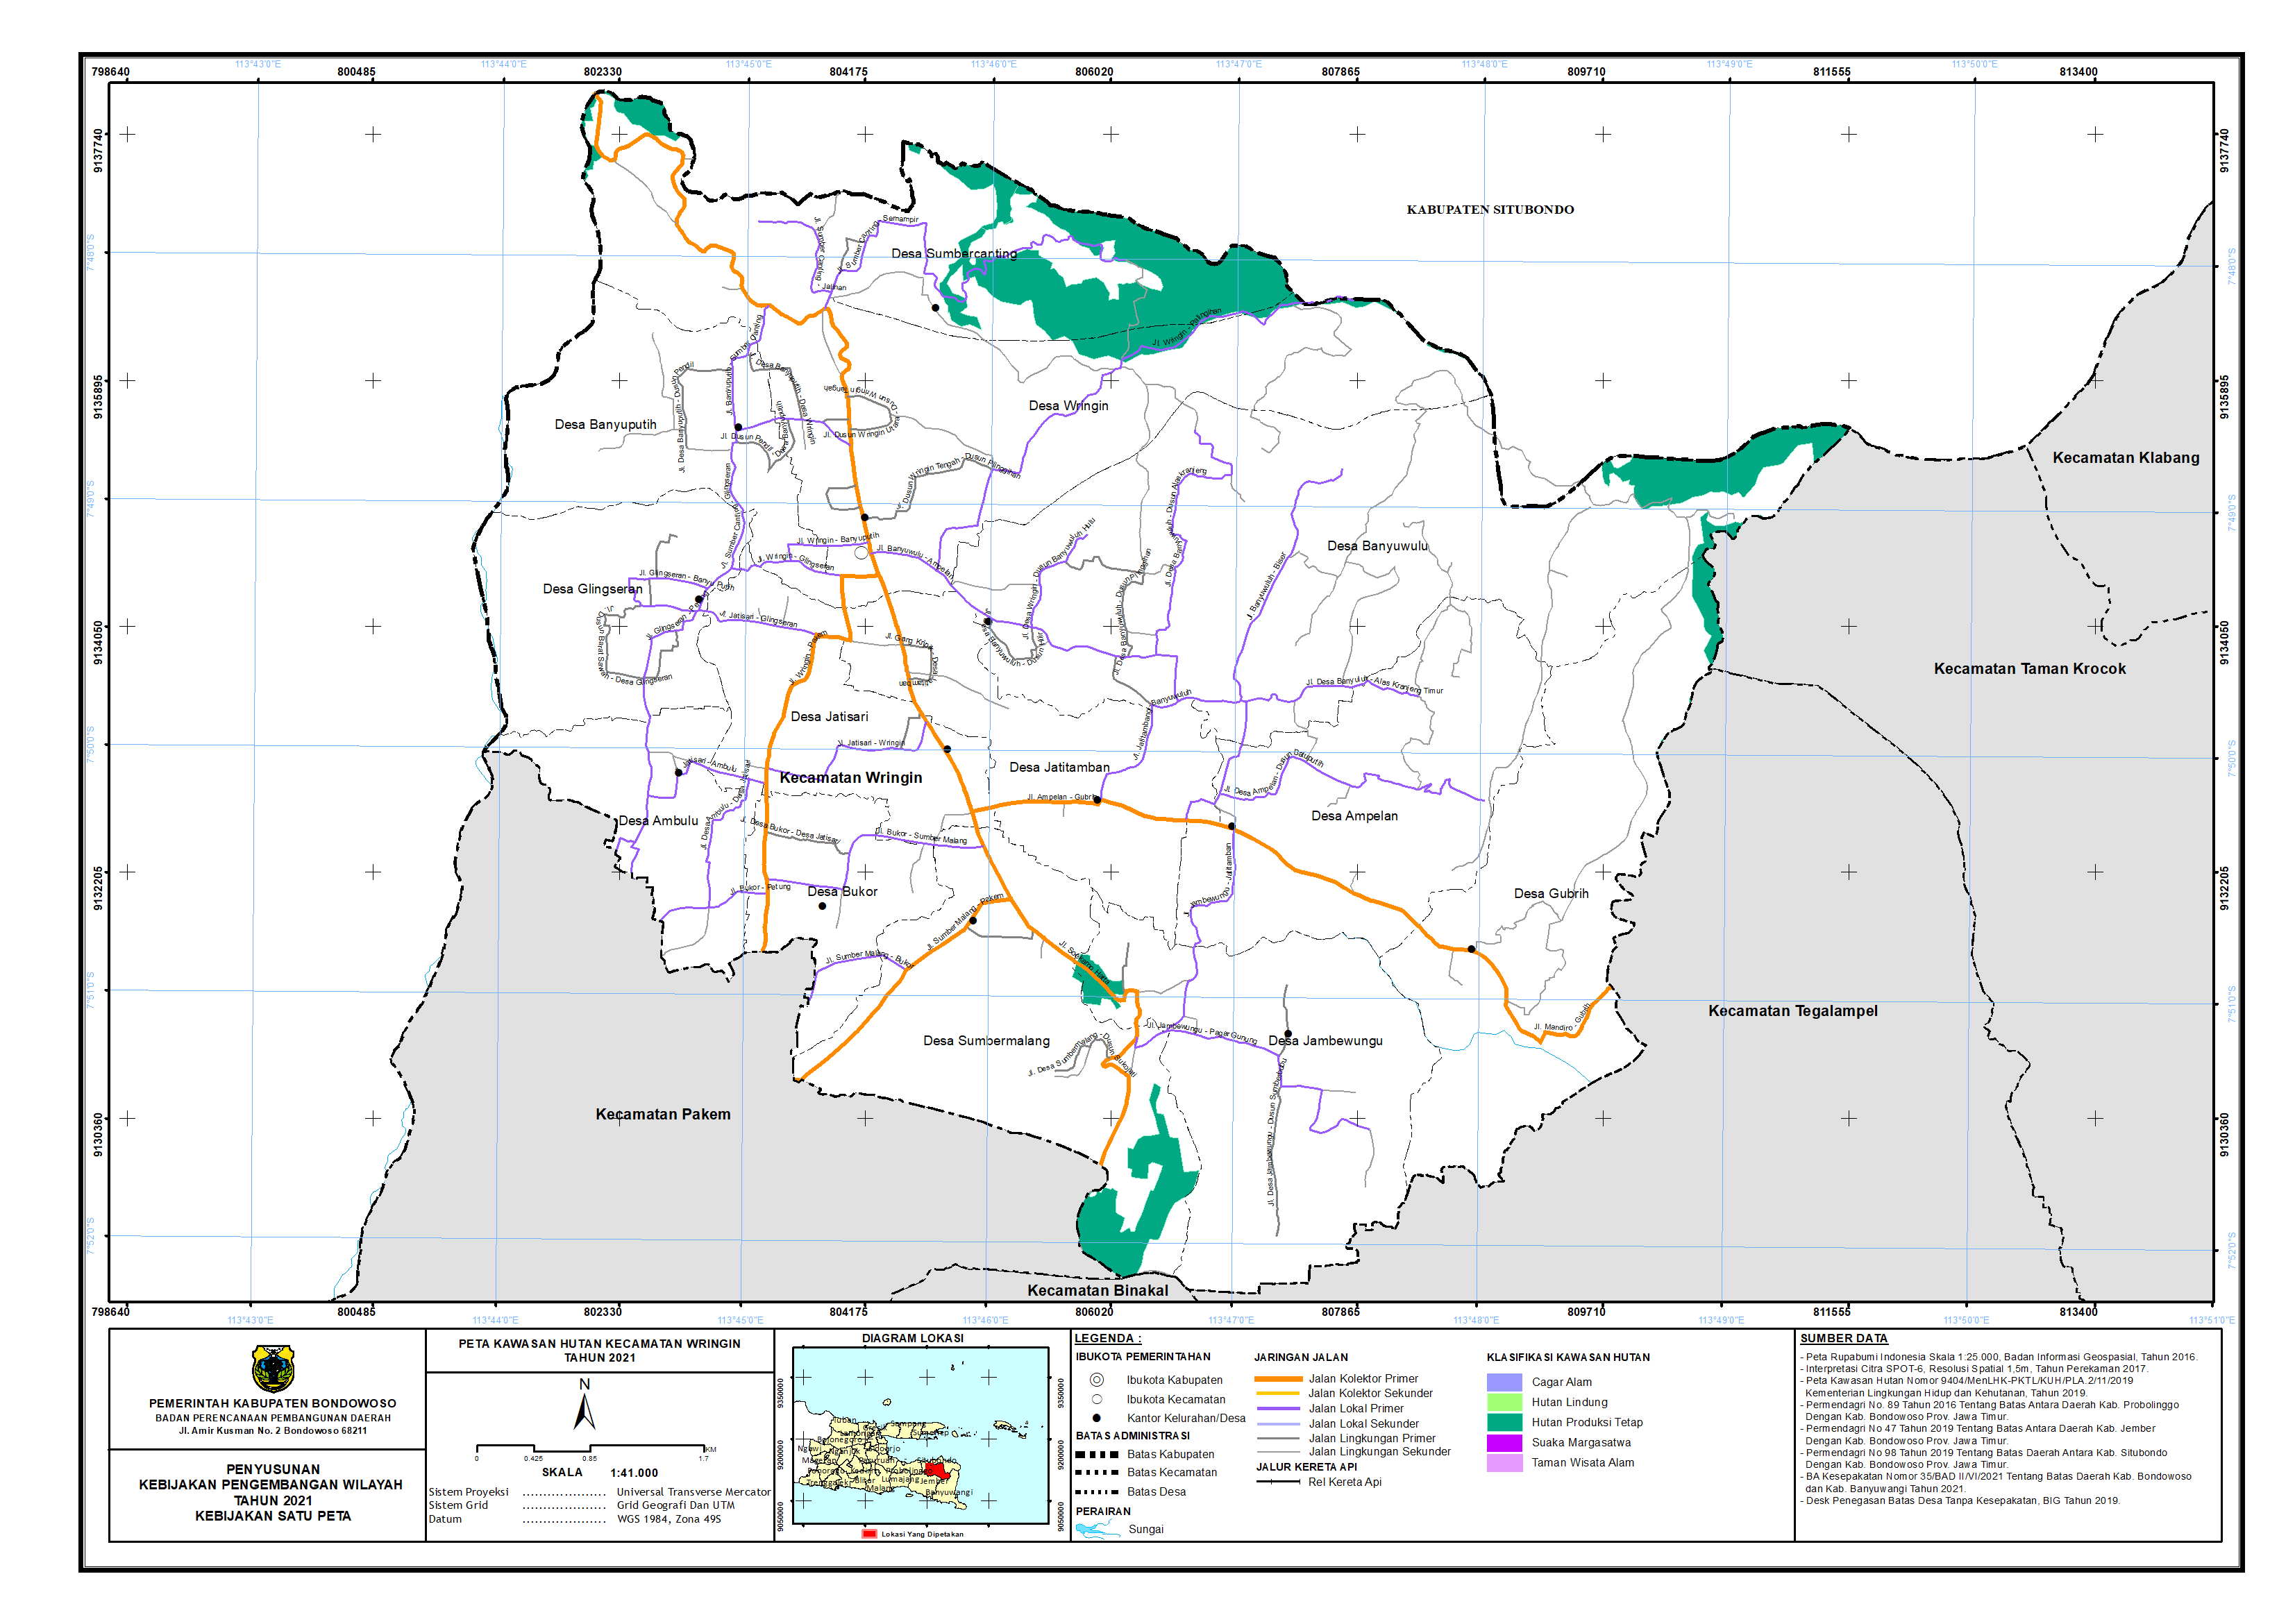 Peta Kawasan Hutan Kecamatan Wringin.png